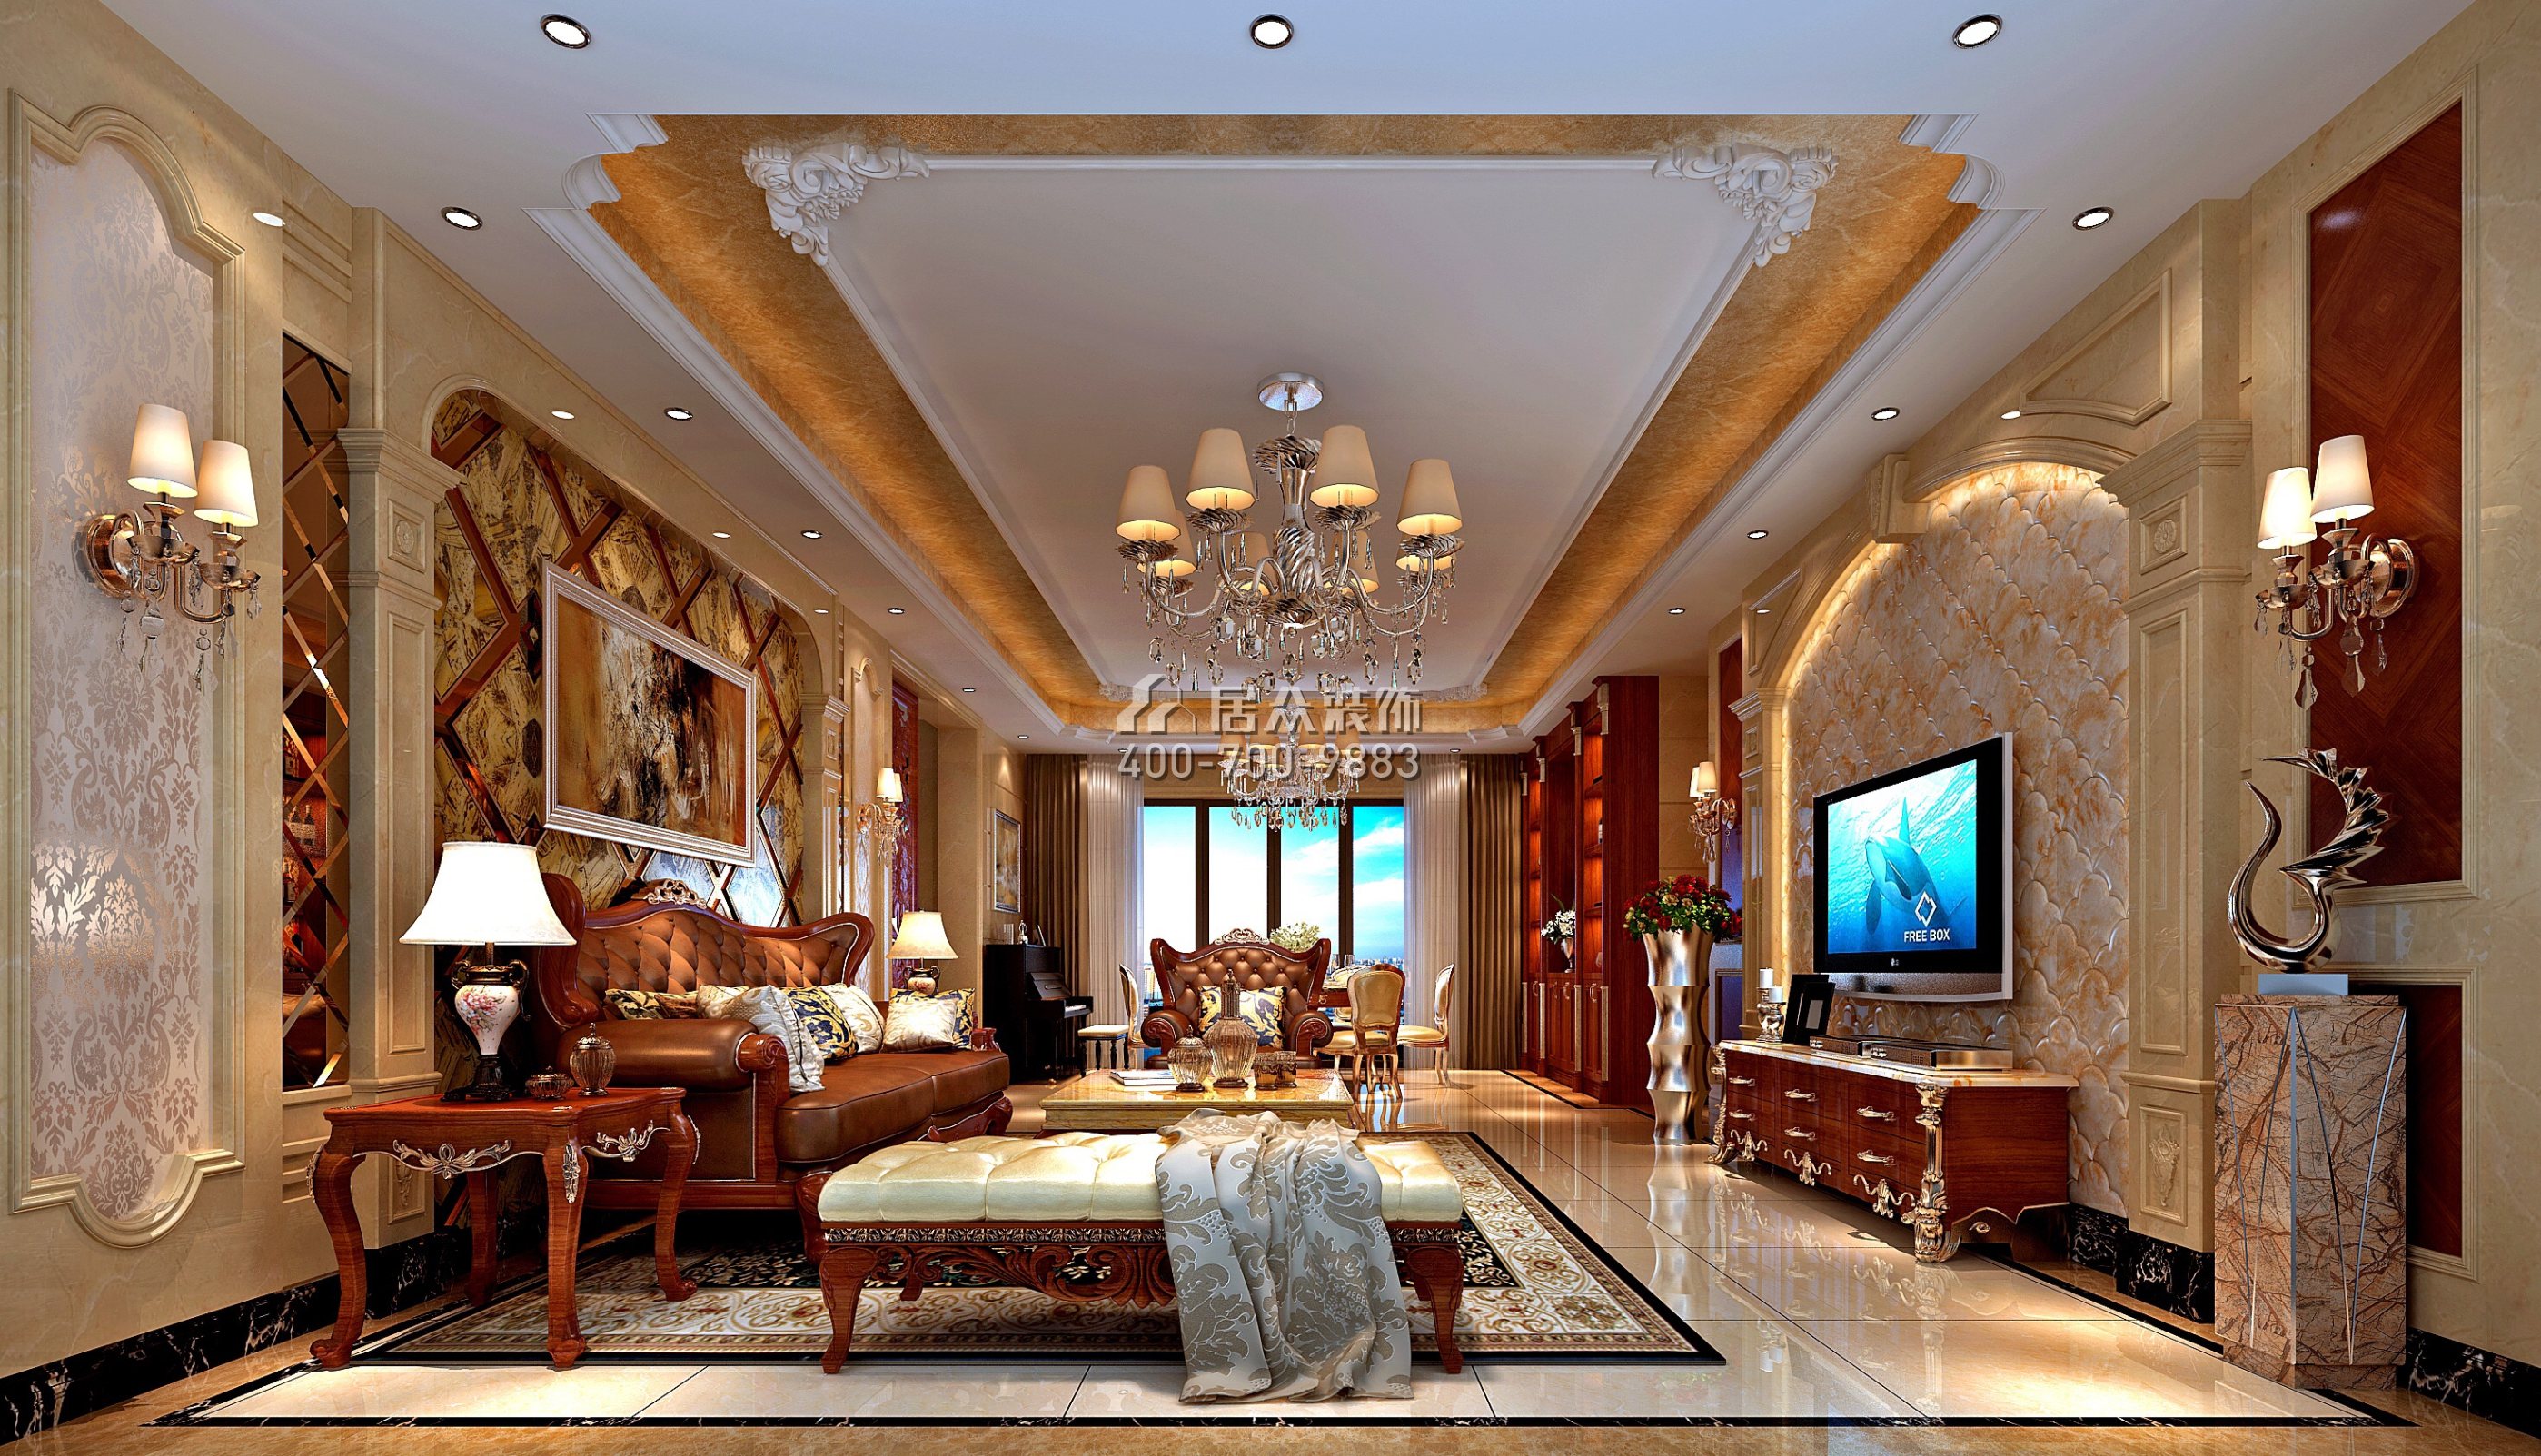 星河丹堤139平方米欧式风格平层户型客厅装修效果图